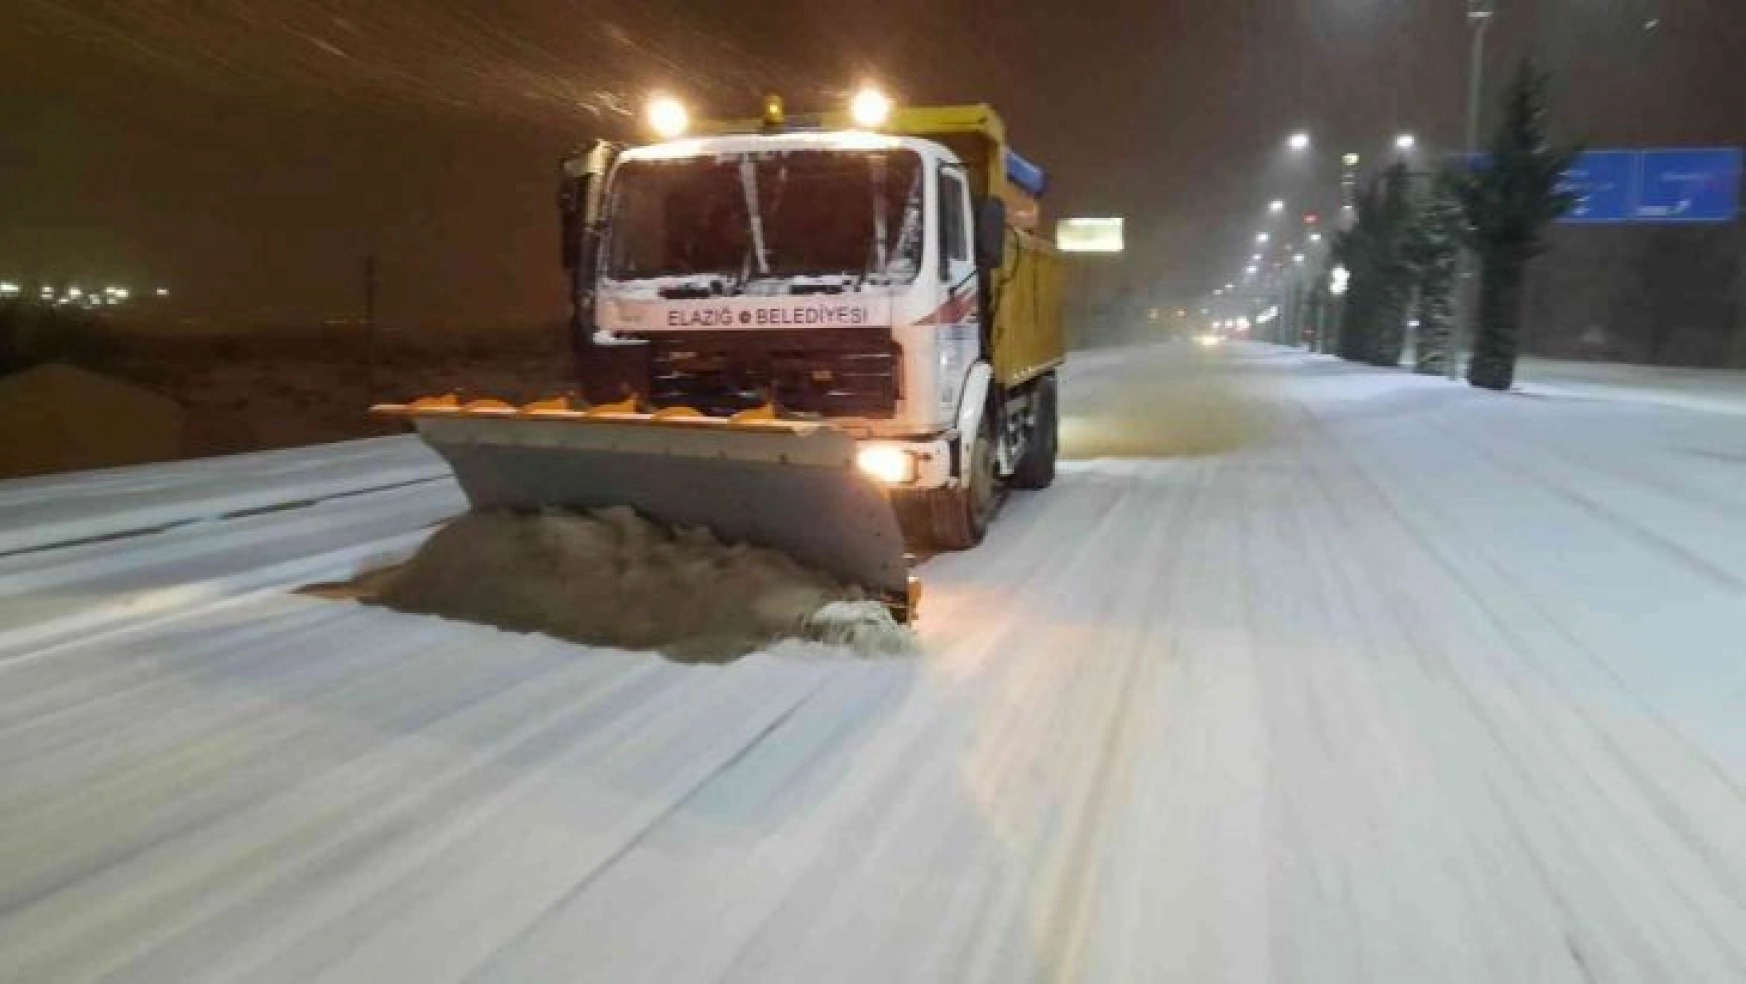 Elazığ'da belediye ekipleri gece de karla mücadelesini sürdürüyor